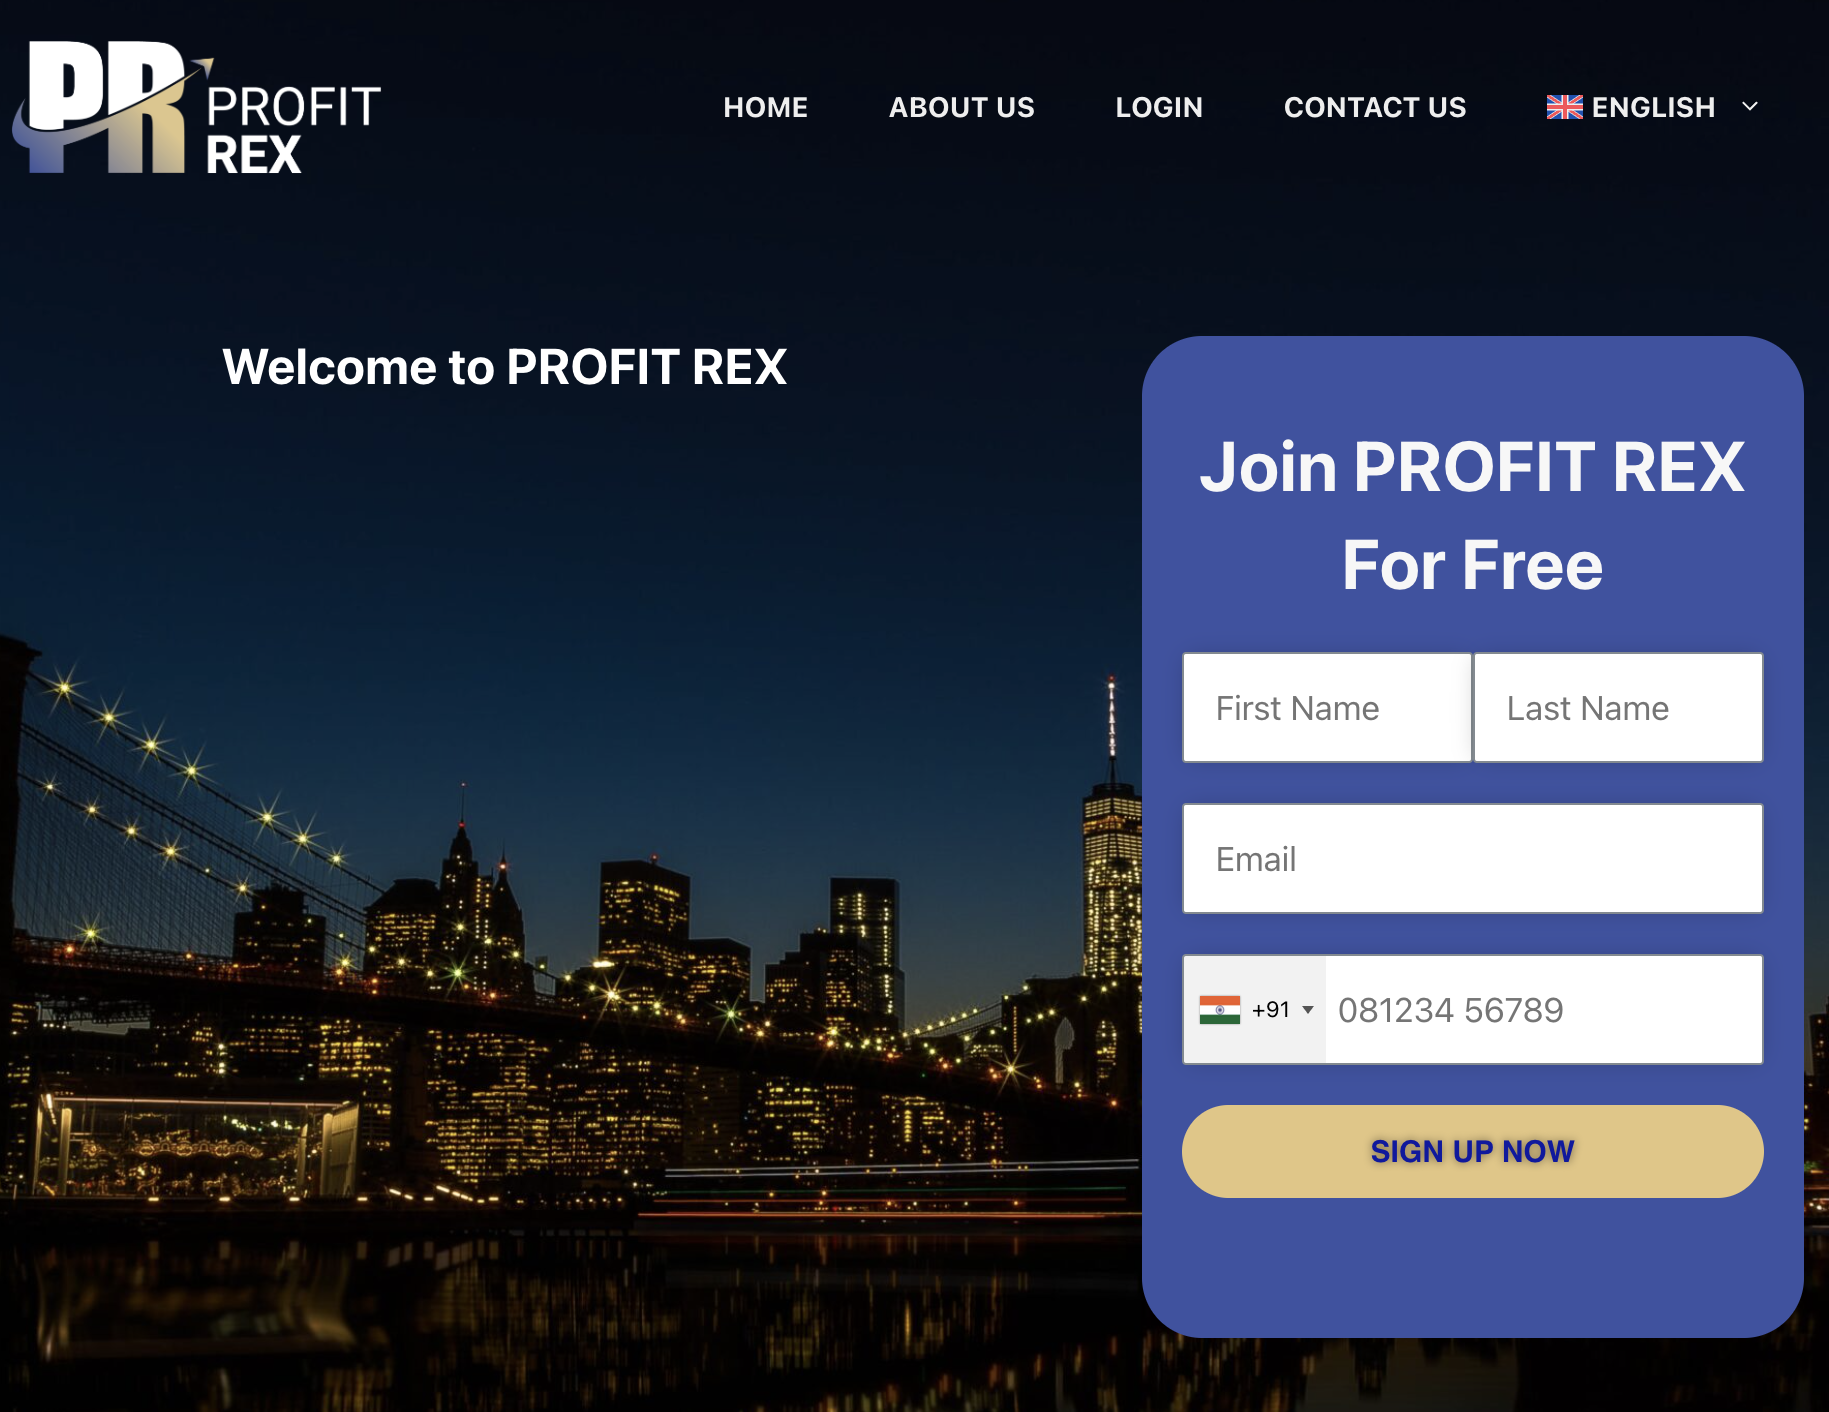 Profit Rex - Legitimate Trading Platform?